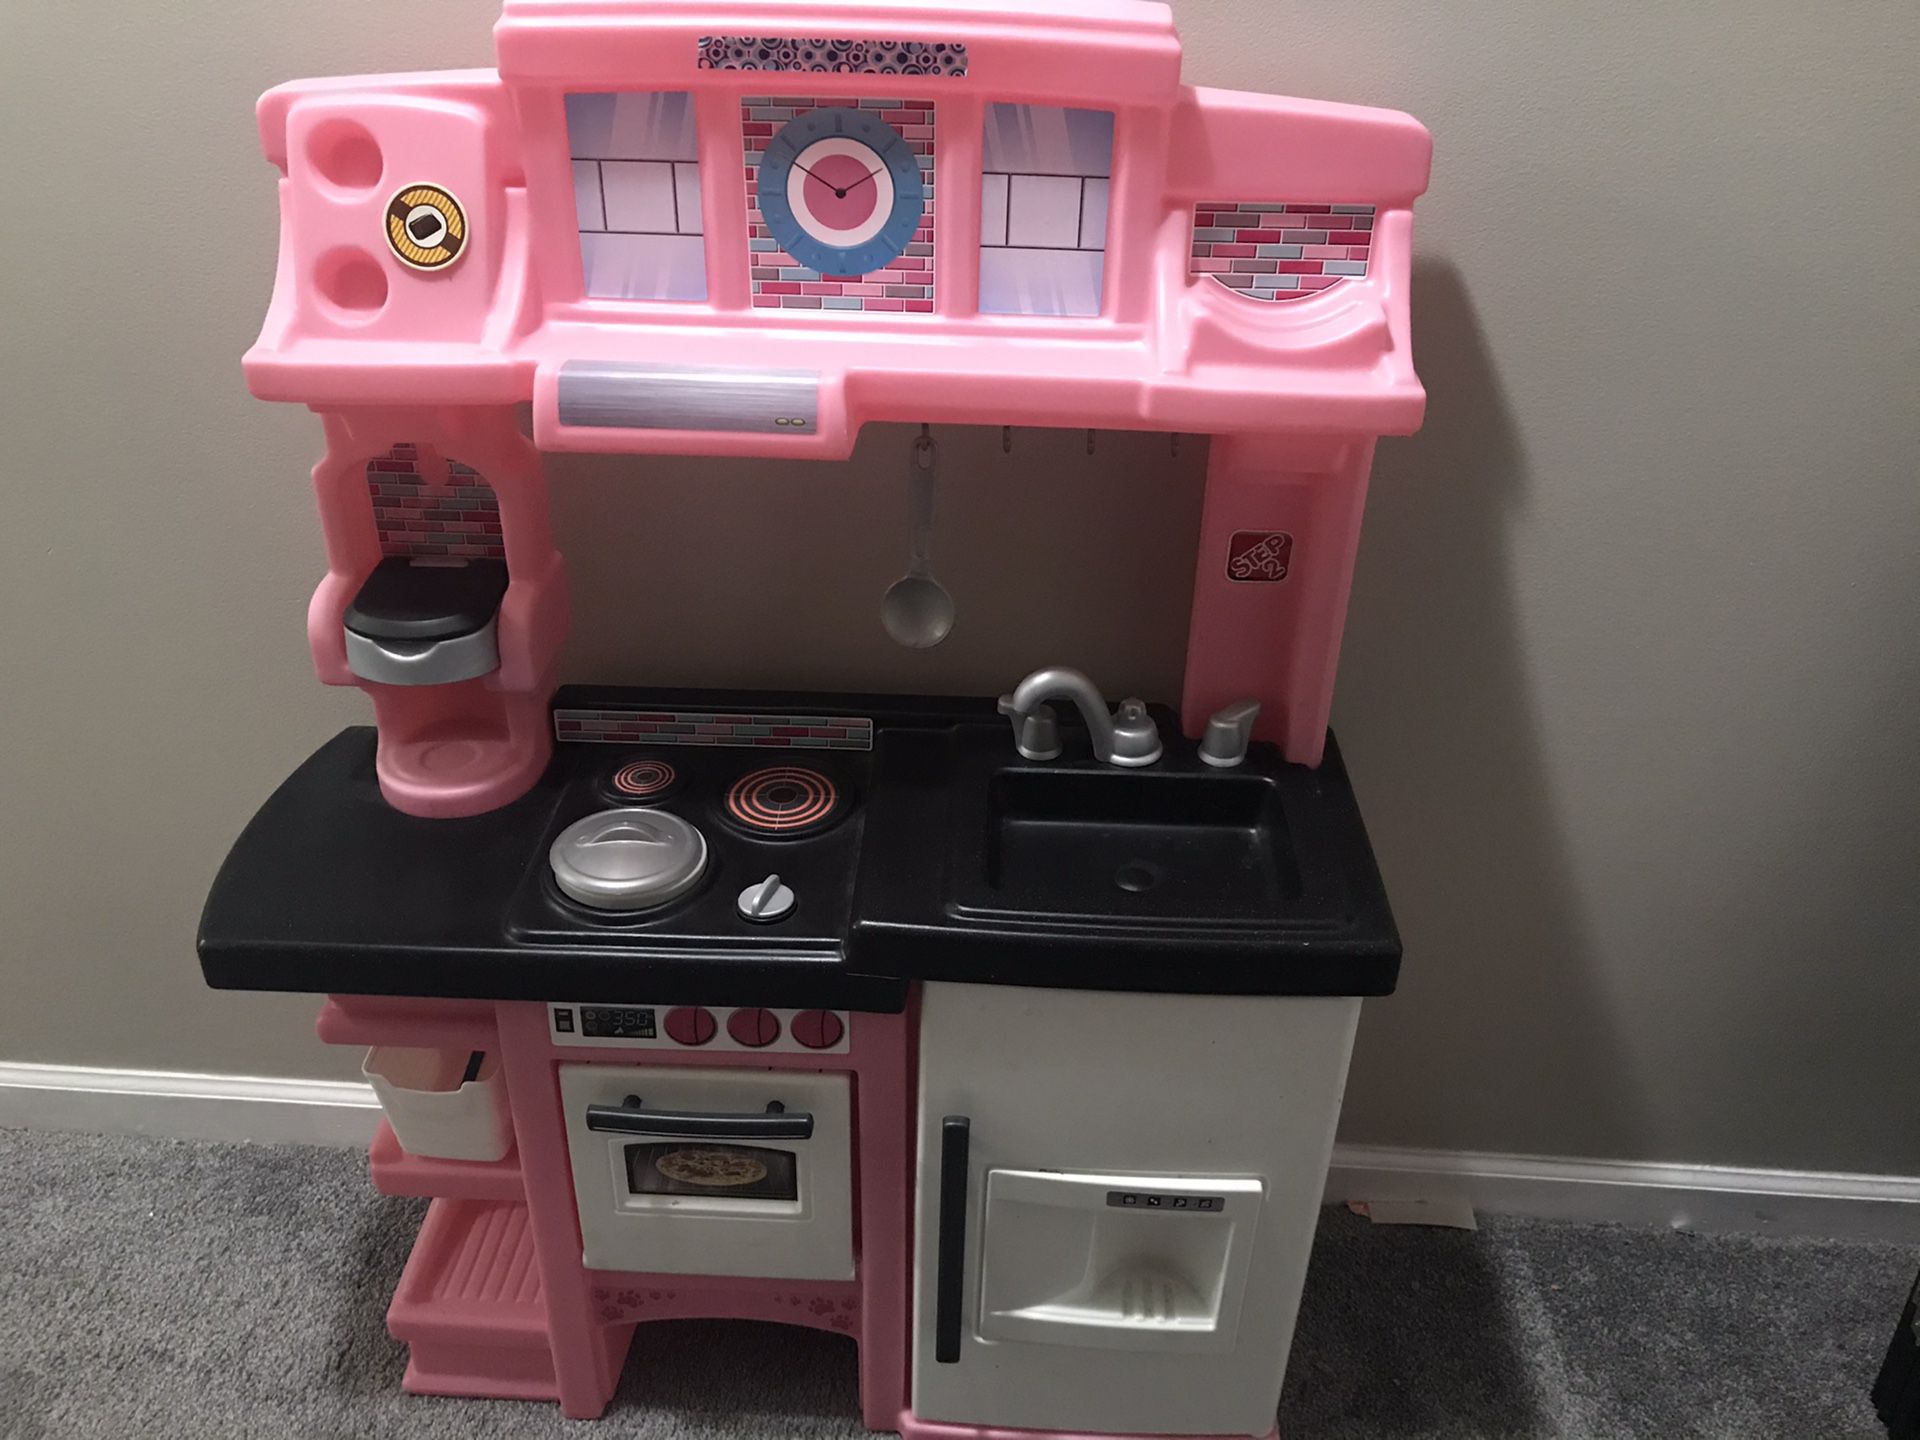 Toy kitchen